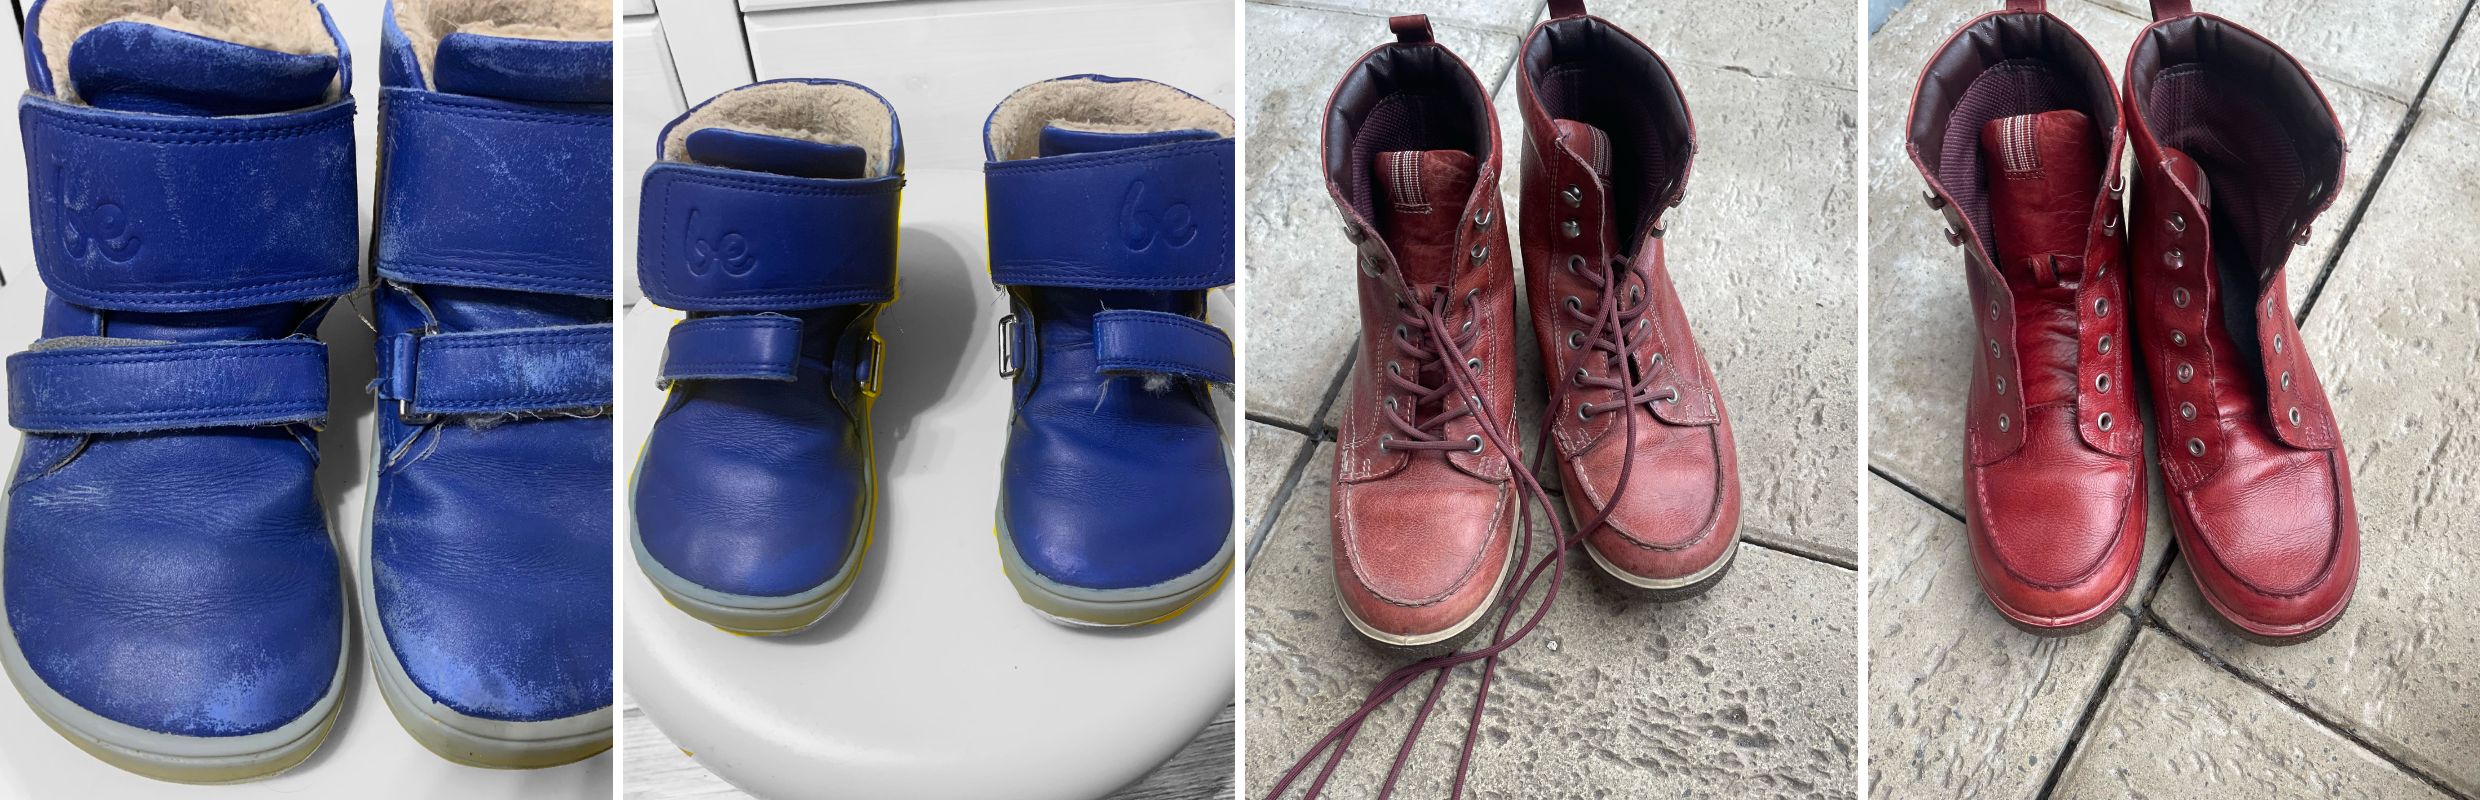 Revitalizace bot s vybledlou barvou a unaveným vzhledem